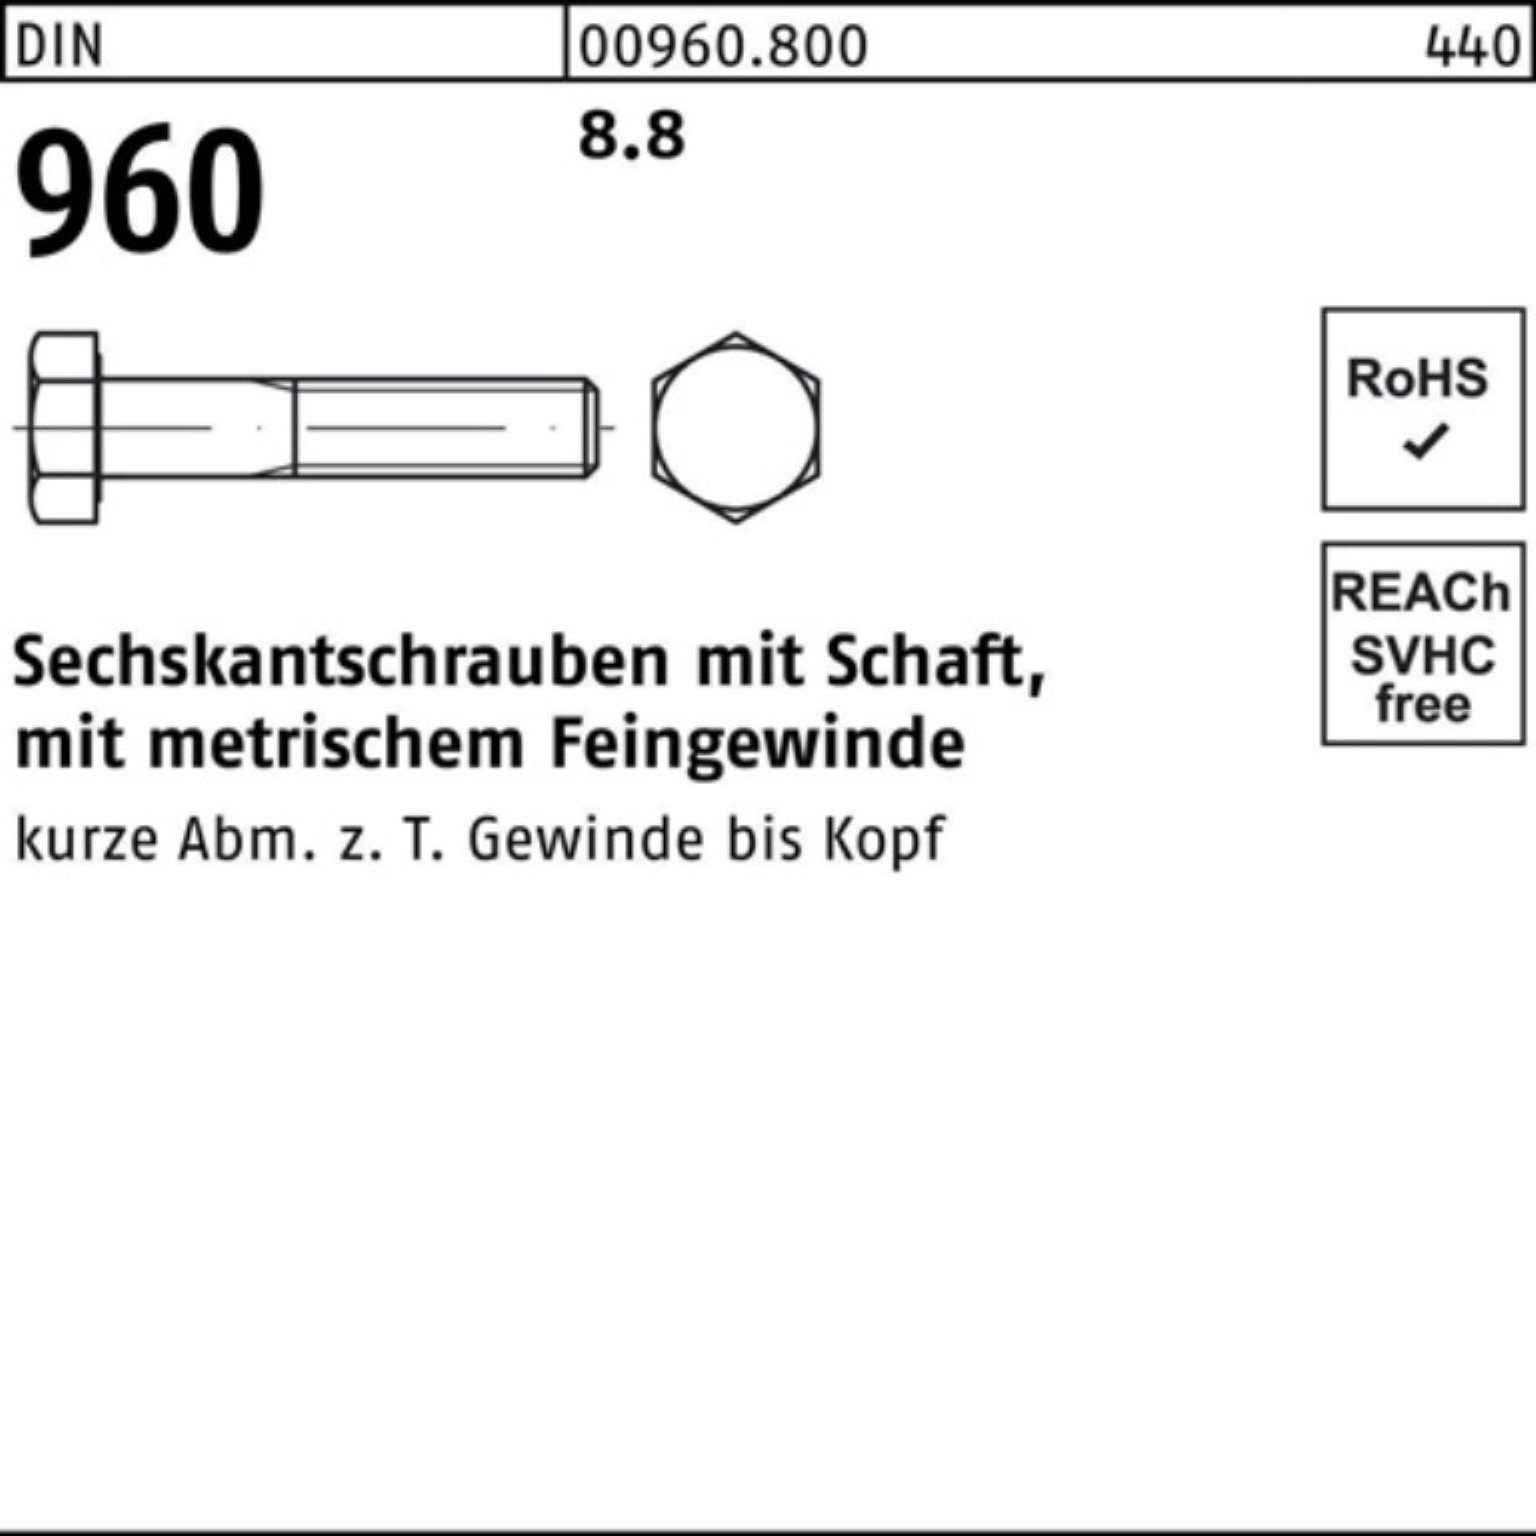 Reyher Sechskantschraube 100er 960 8.8 Schaft Sechskantschraube Stück Pack DI M20x2x100 DIN 25